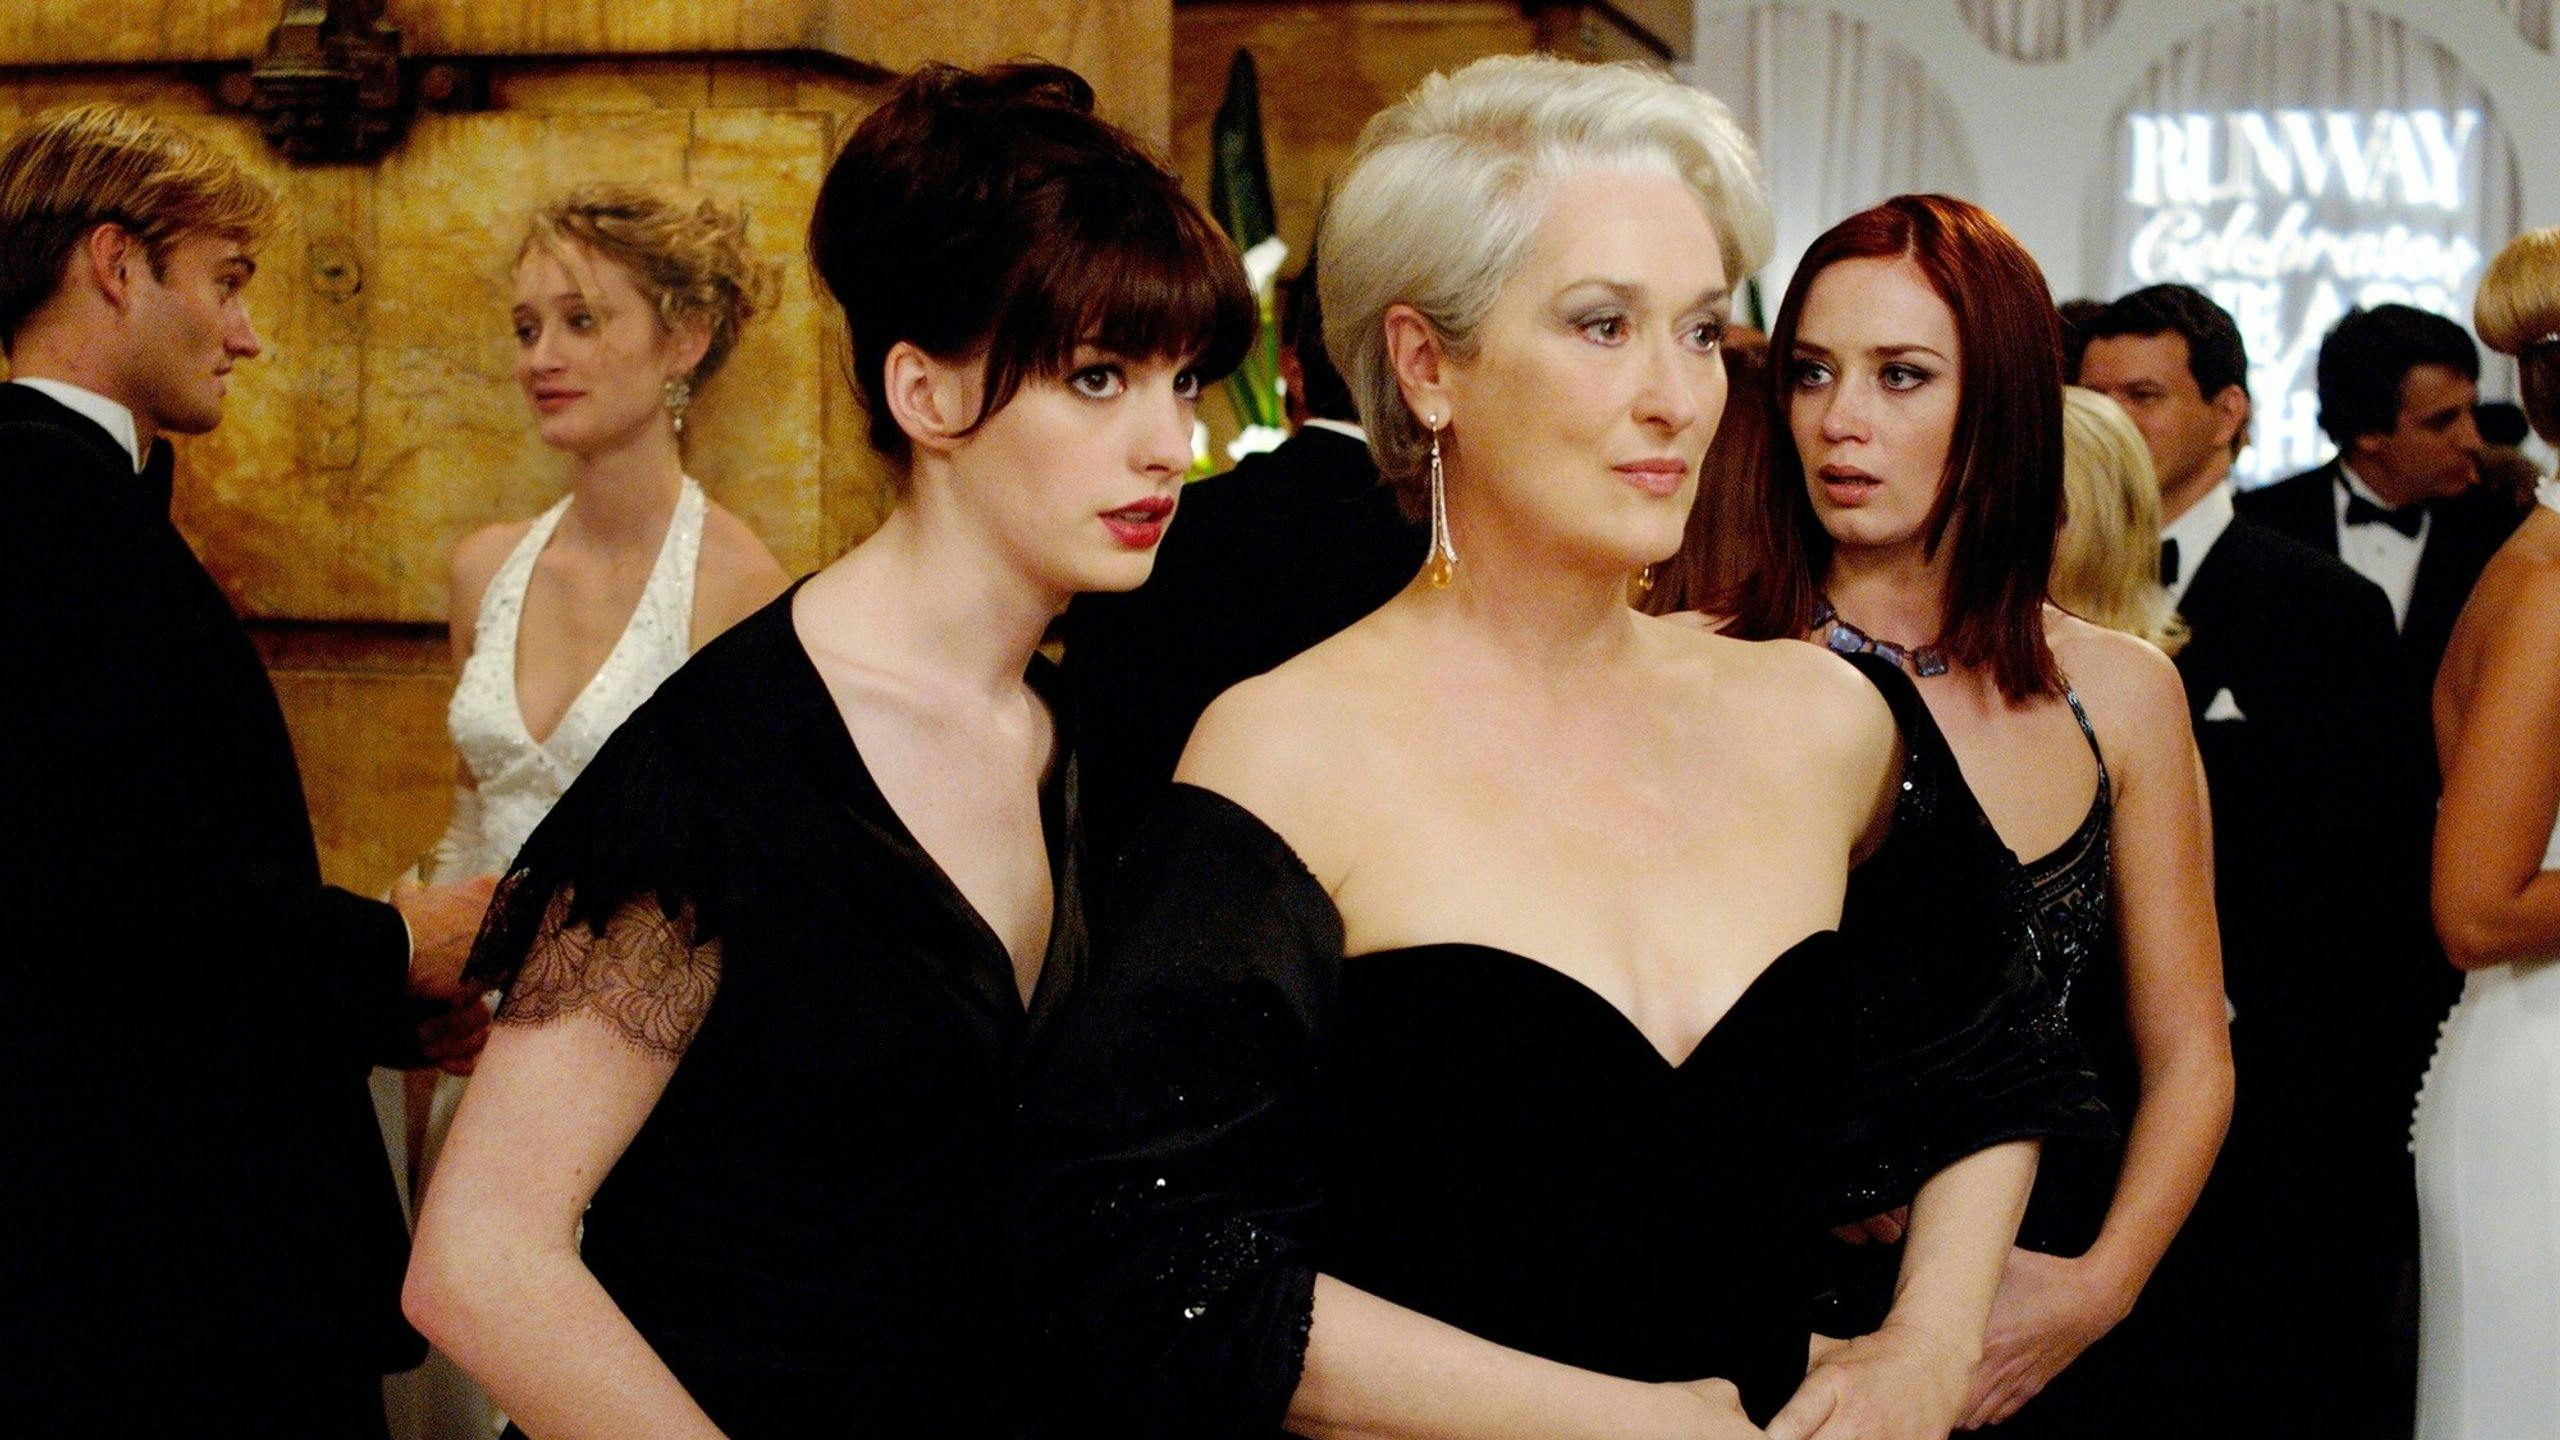  Anne Hathaway, Meryl Streep y Emily Blunt dando vida a Andy Sachs, Miranda Priestly y Emily -respectivamente- en 'El diablo viste de prada' (2006)